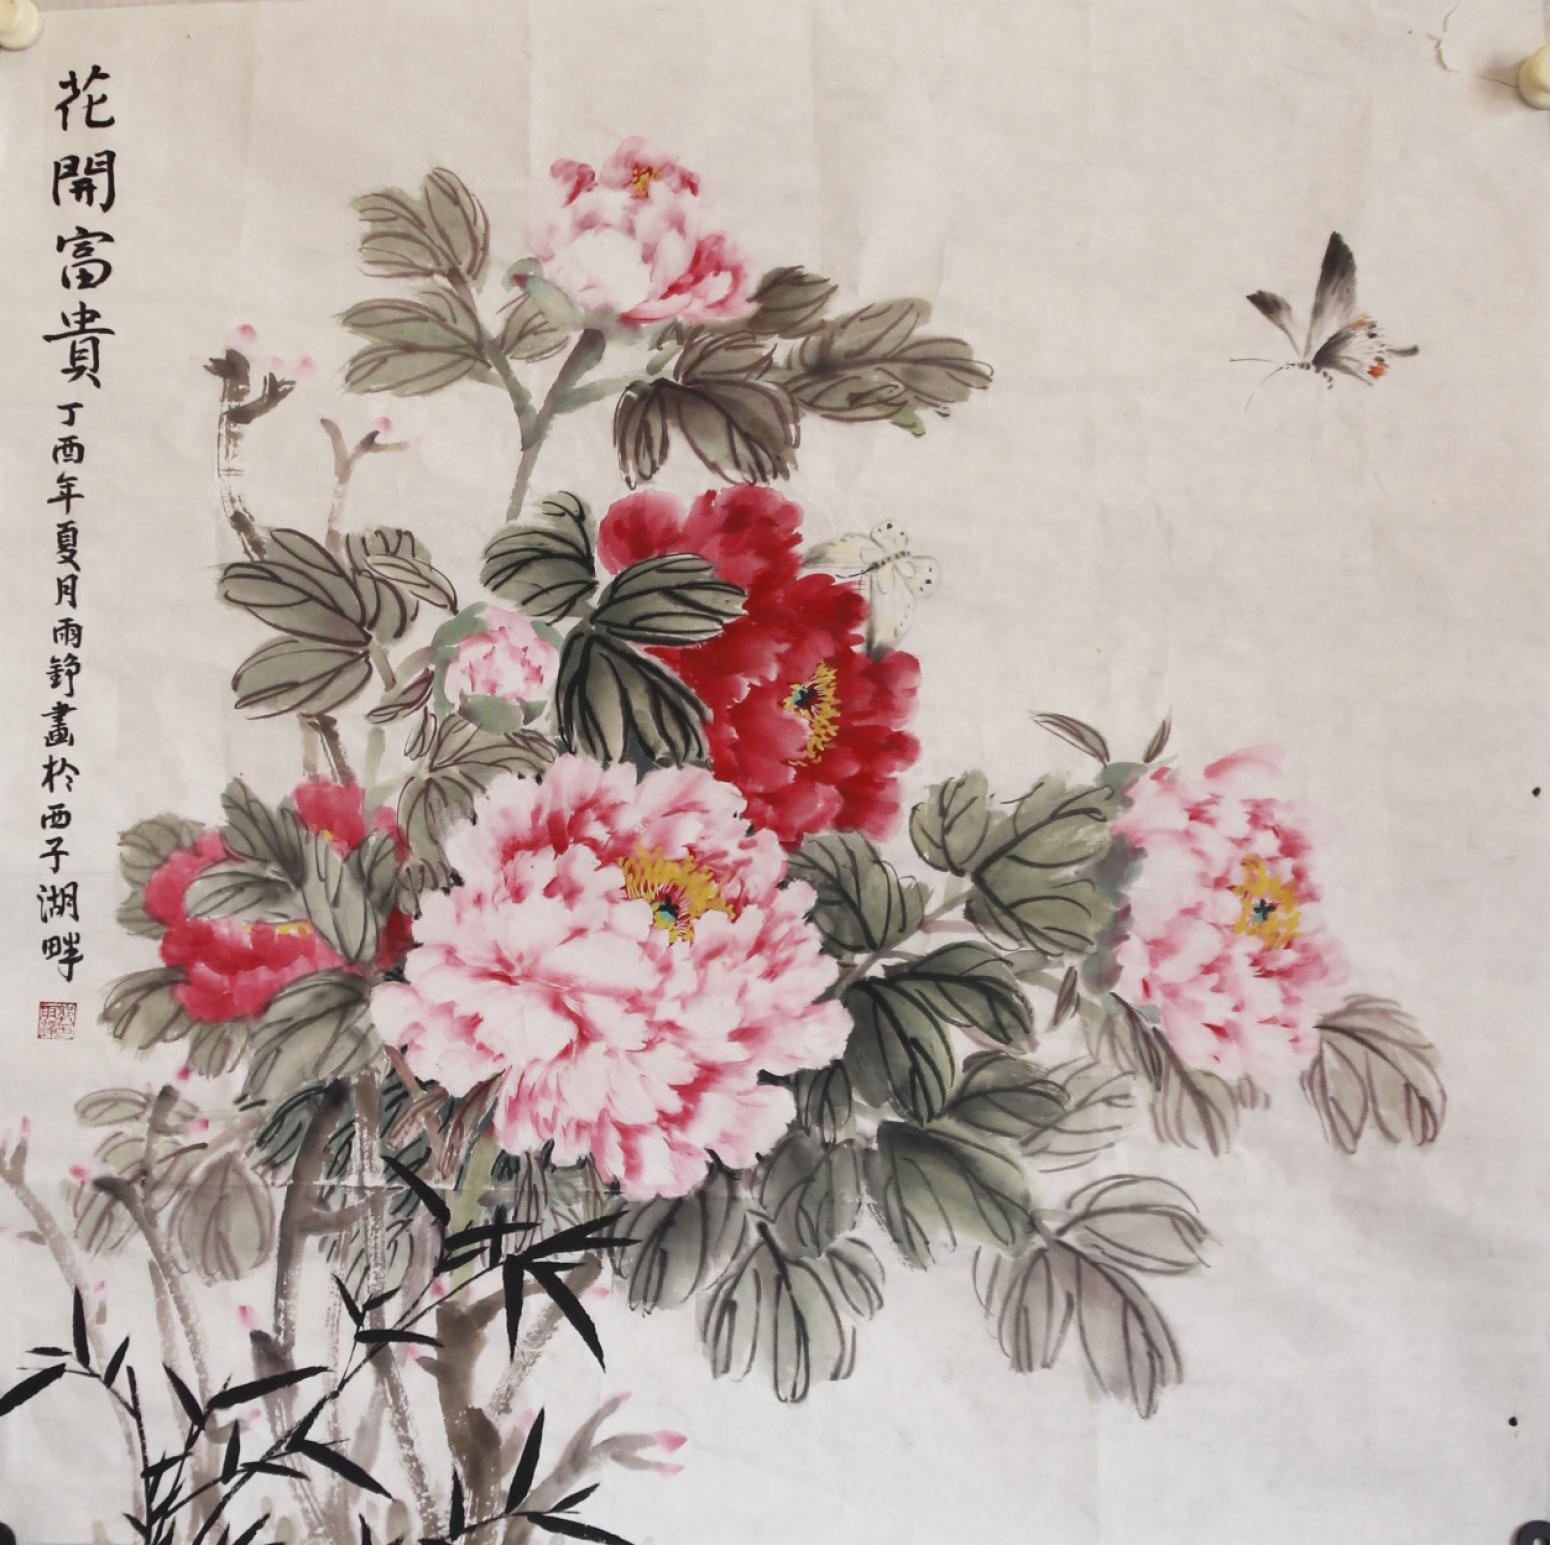 郭雨铮国画作品《牡丹蝴蝶图《花开富贵》》